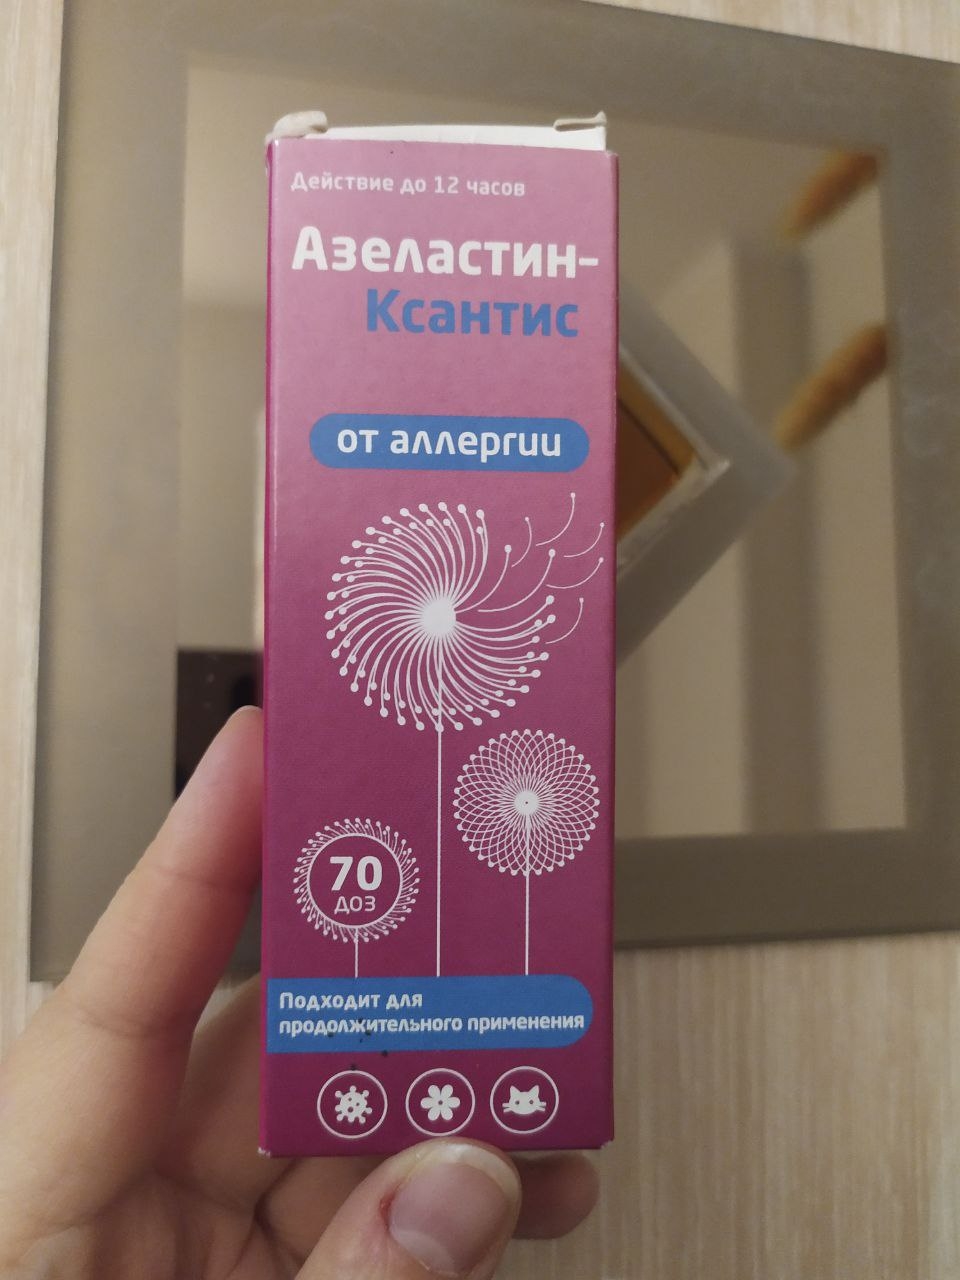 Спрей от аллергии Азеластин-Ксантис - Этот спрей заменил мне все сосудосуживающие